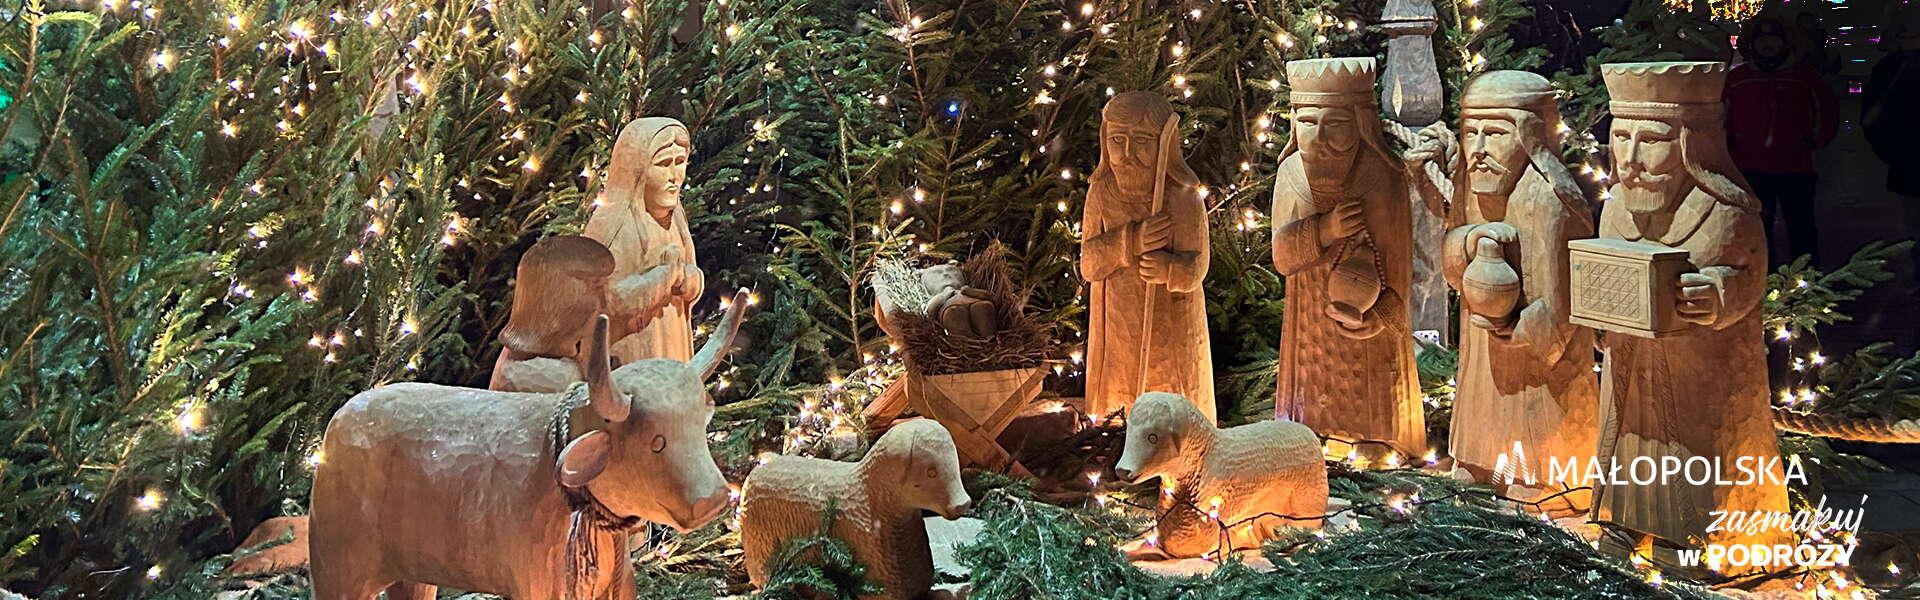 Drewniane figurki Dzieciątka Jezus, Maryi, Józefa, Trzech Króli, woła i owiec ustawione w szopce, otoczone iglastymi drzewkami